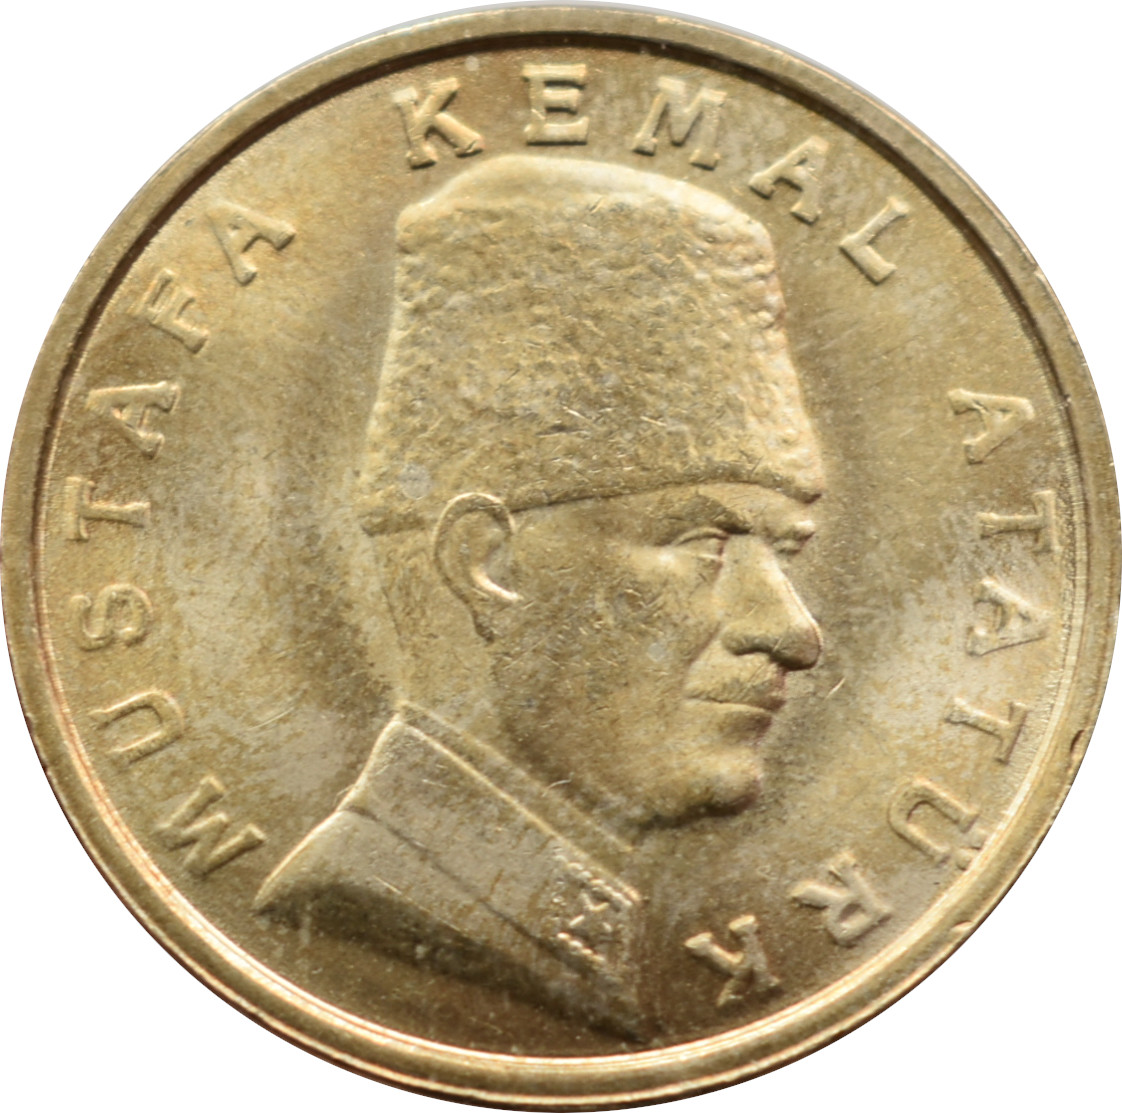 Turecko 100 000 Lira 1999